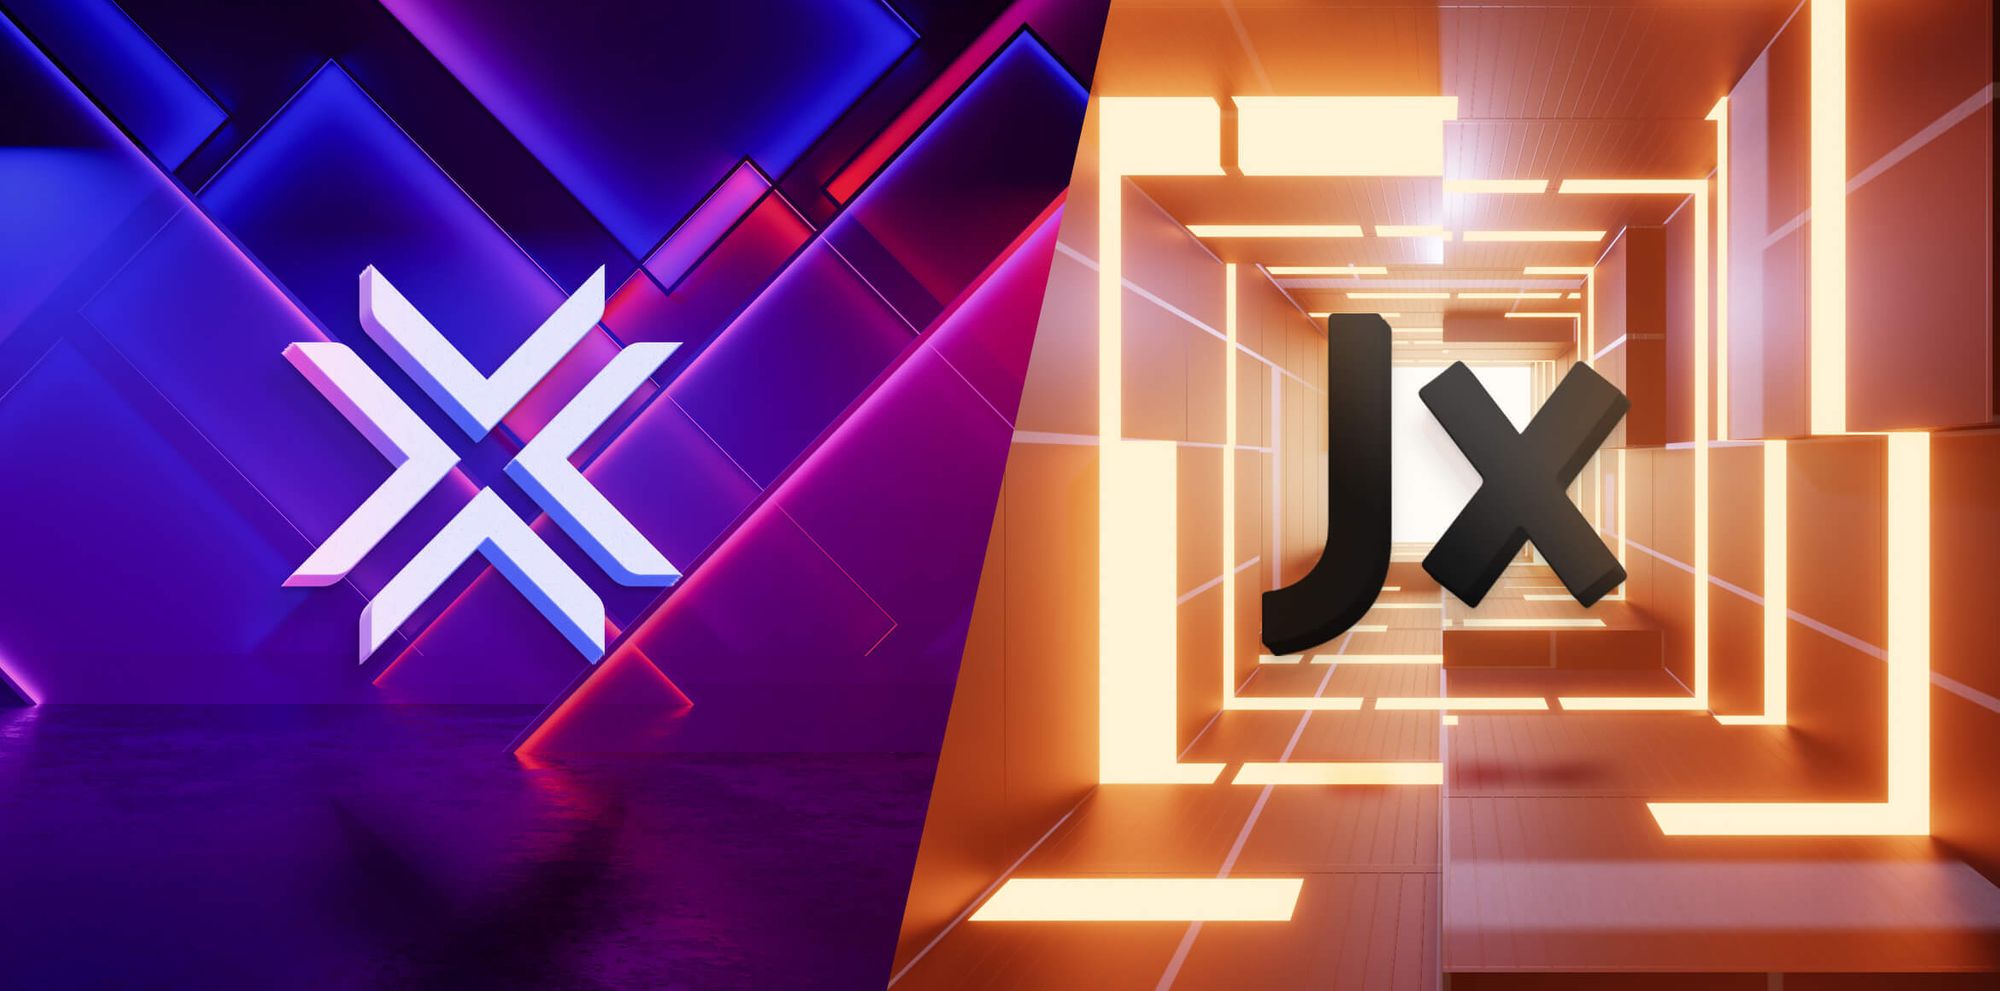 Electrum vs Jaxx: Price, Security & Features